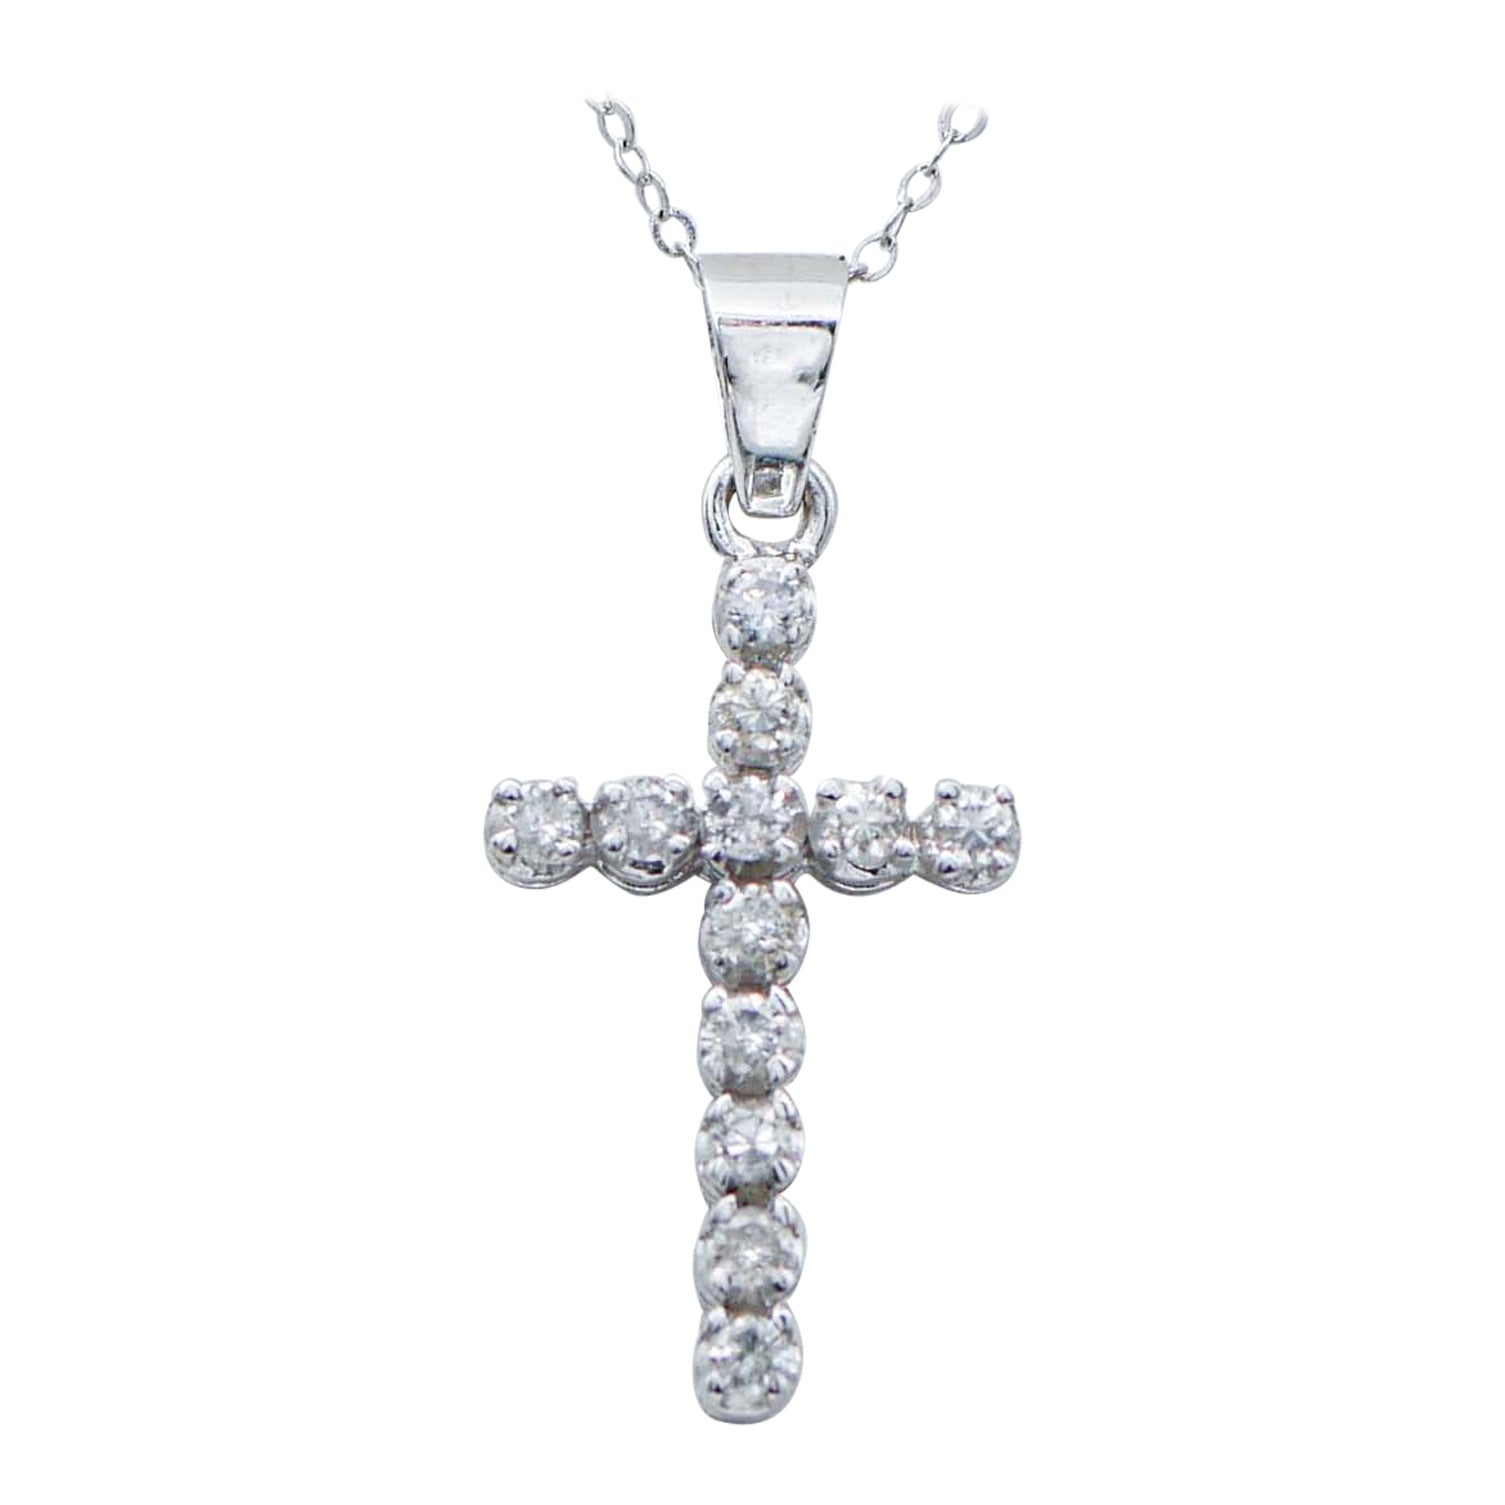 0,42 carats de diamants, collier à pendentif croix en or blanc.